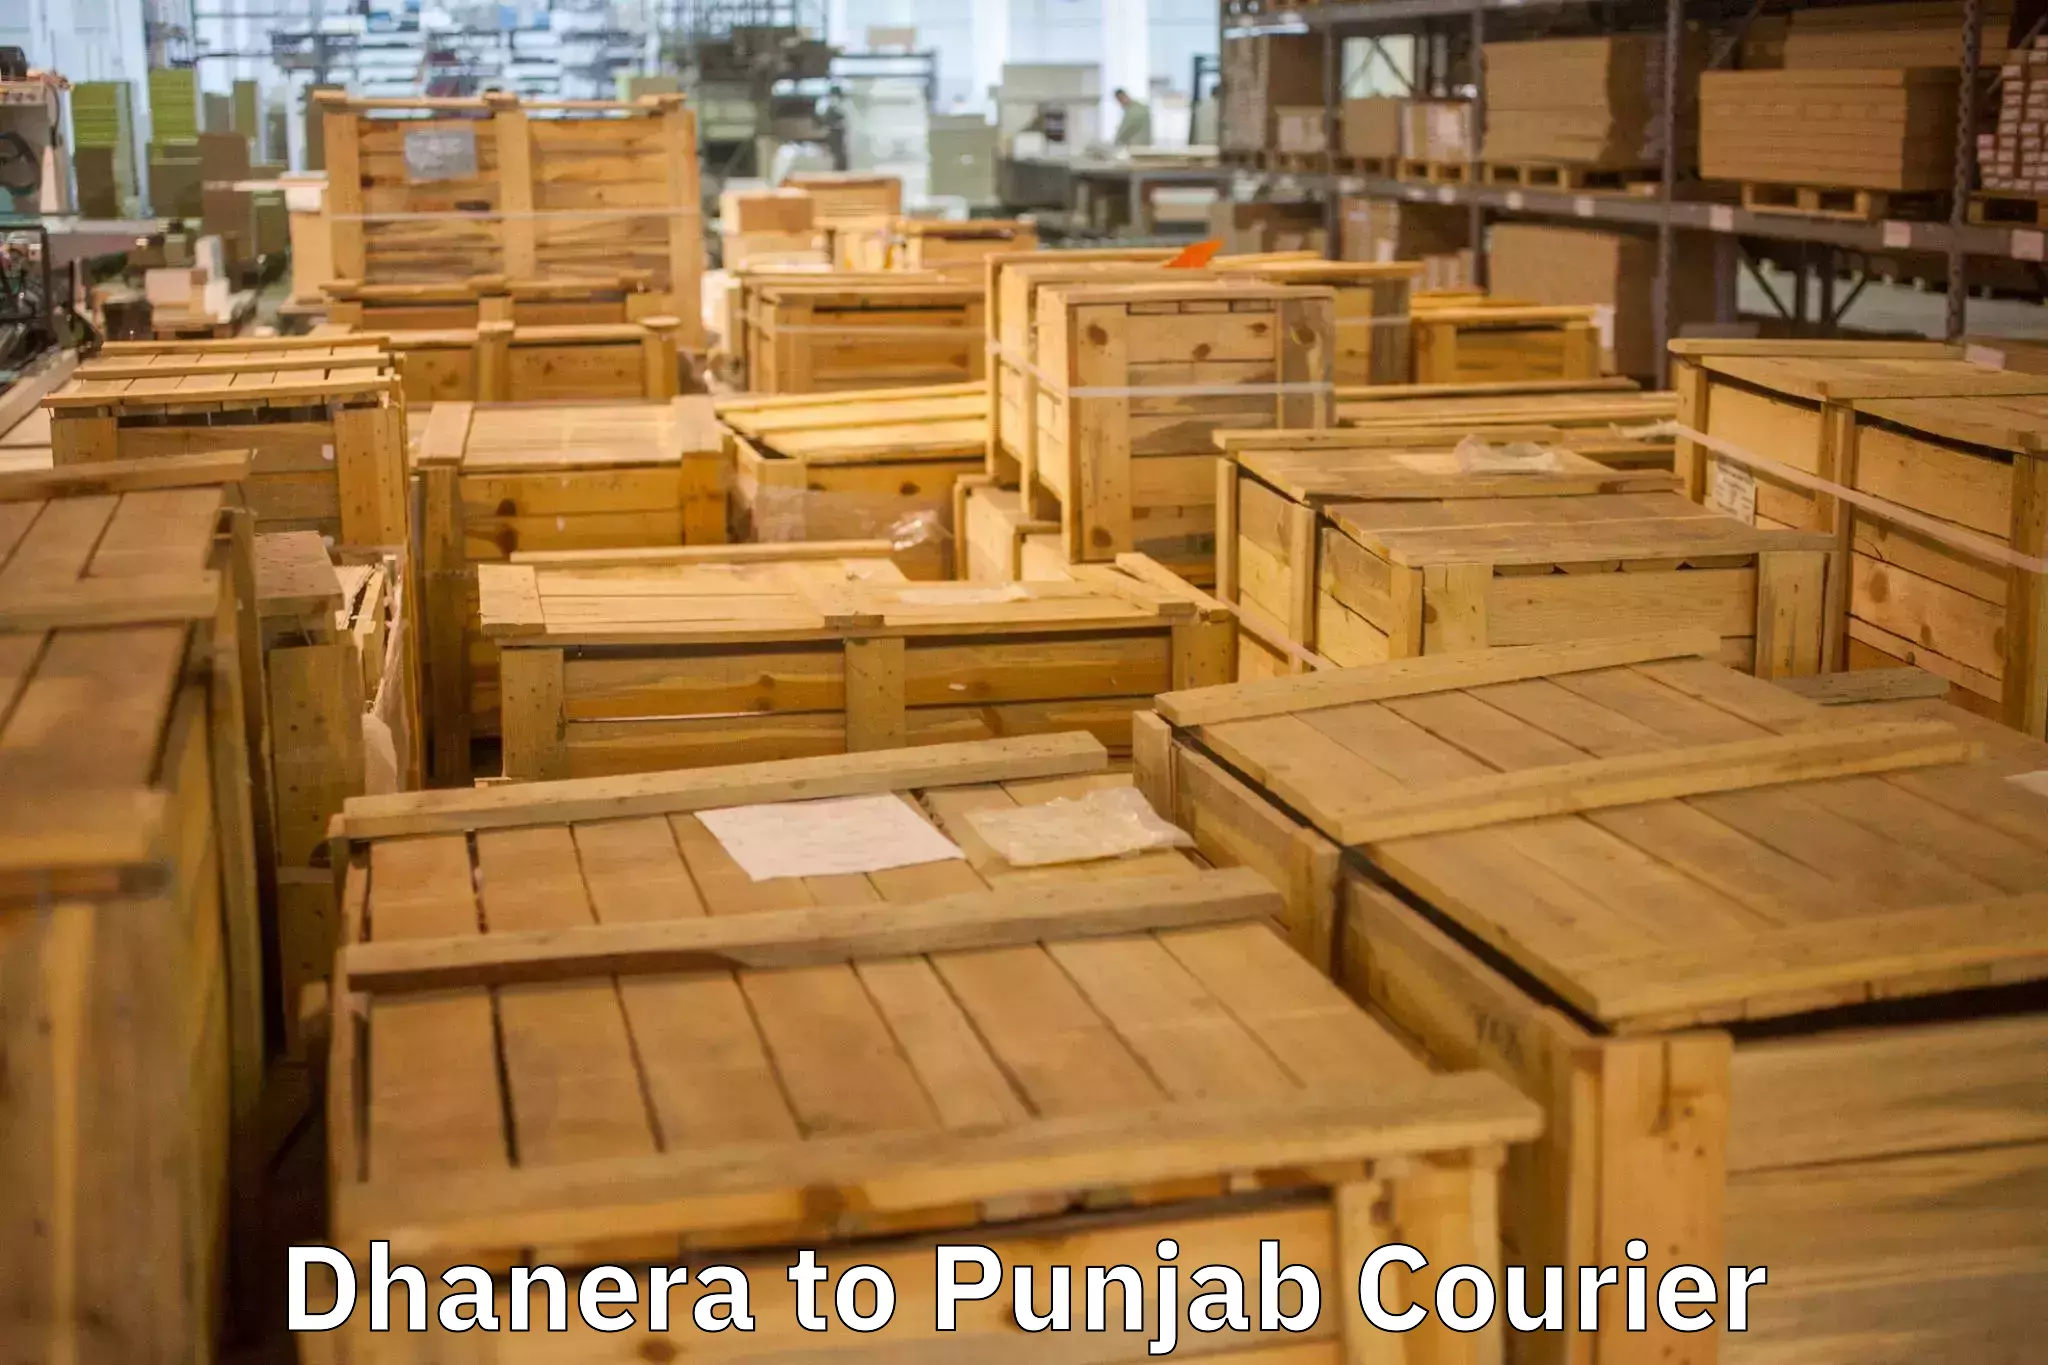 Furniture transport and storage Dhanera to Punjab